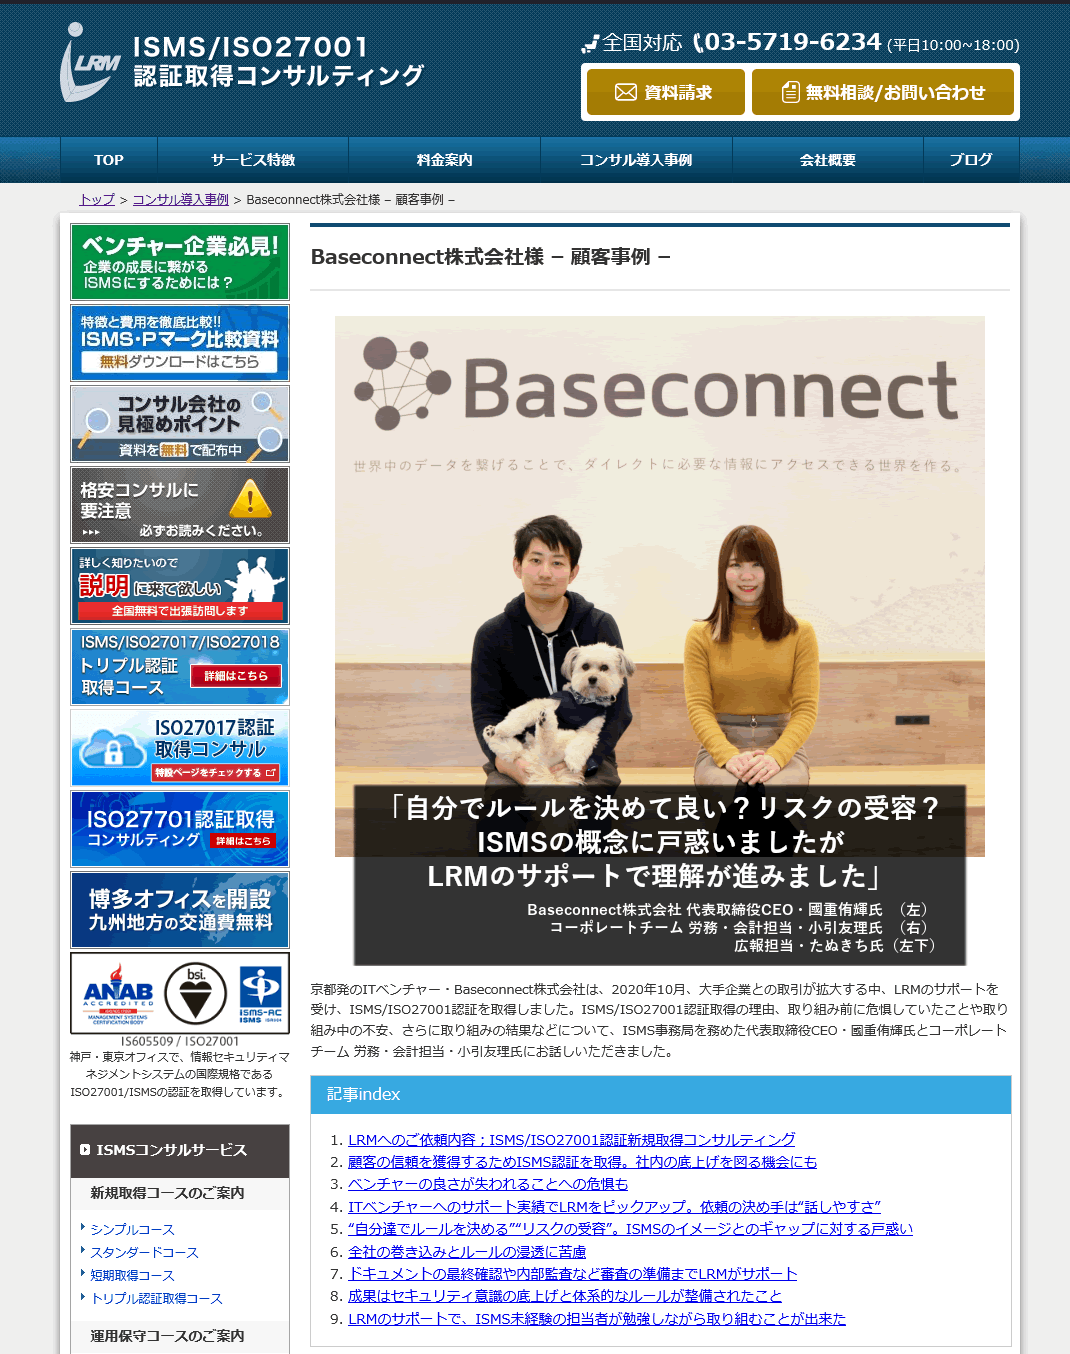 Baseconnect株式会社様